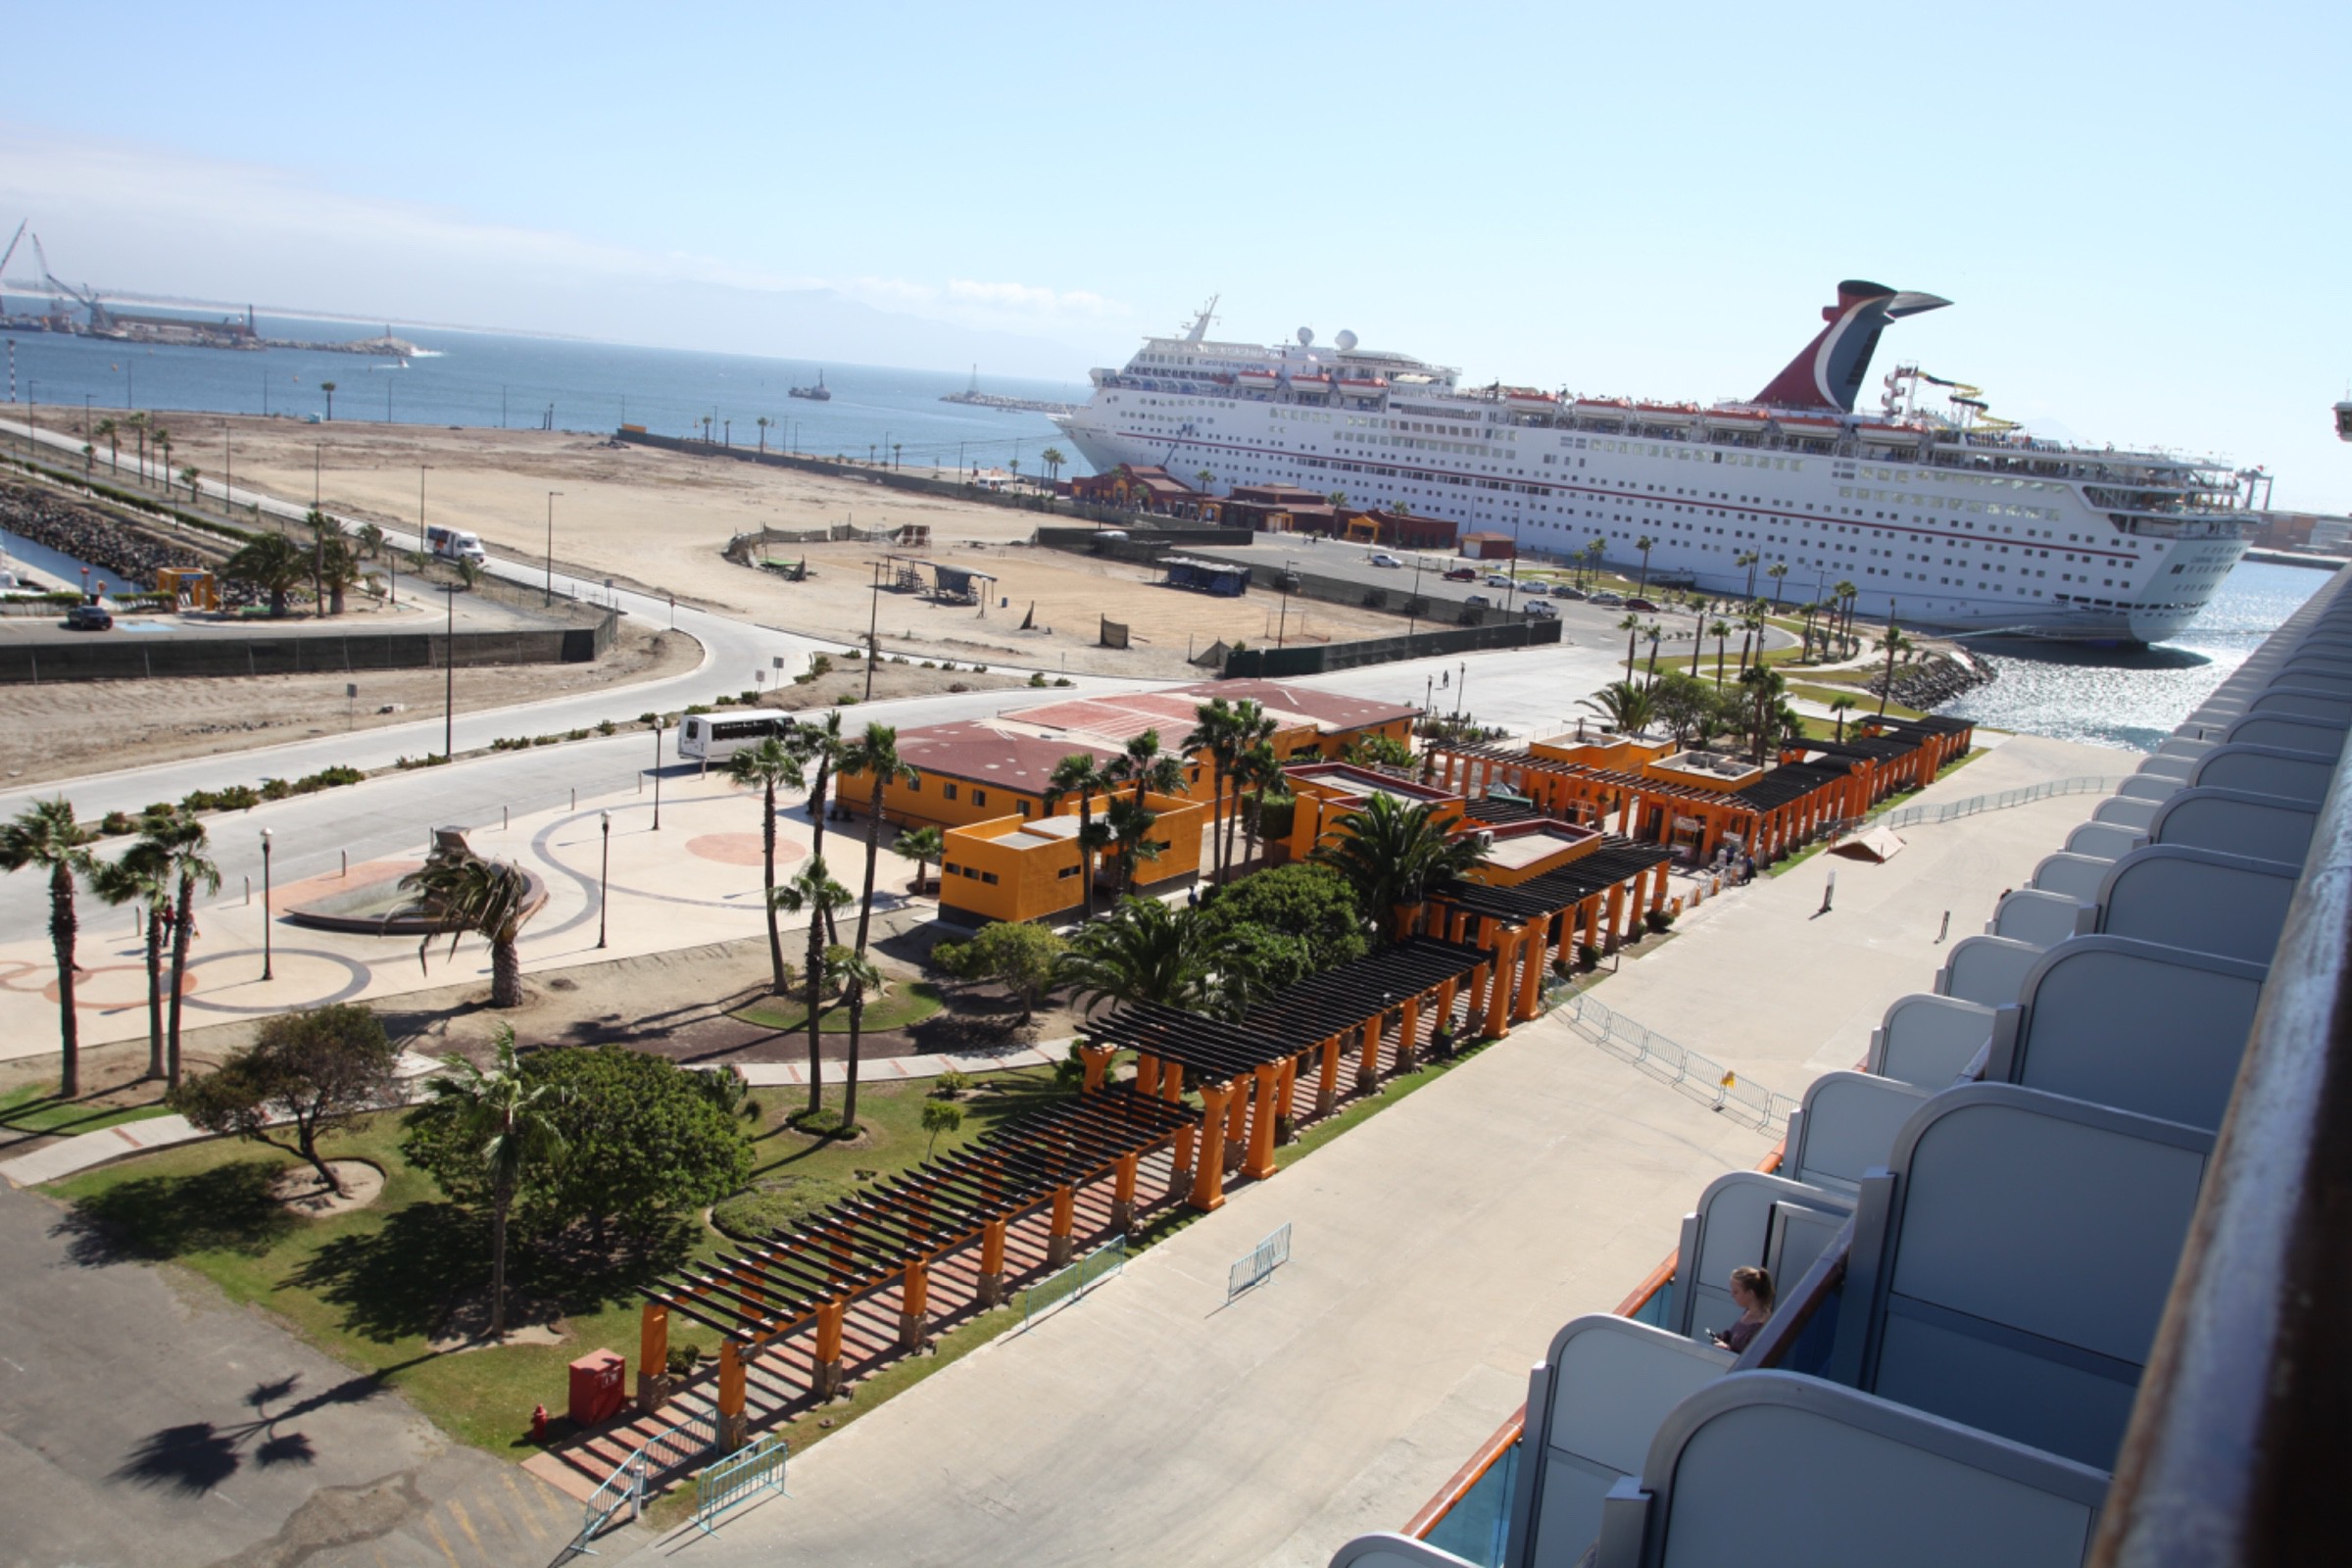 ensenada mexico cruise terminal